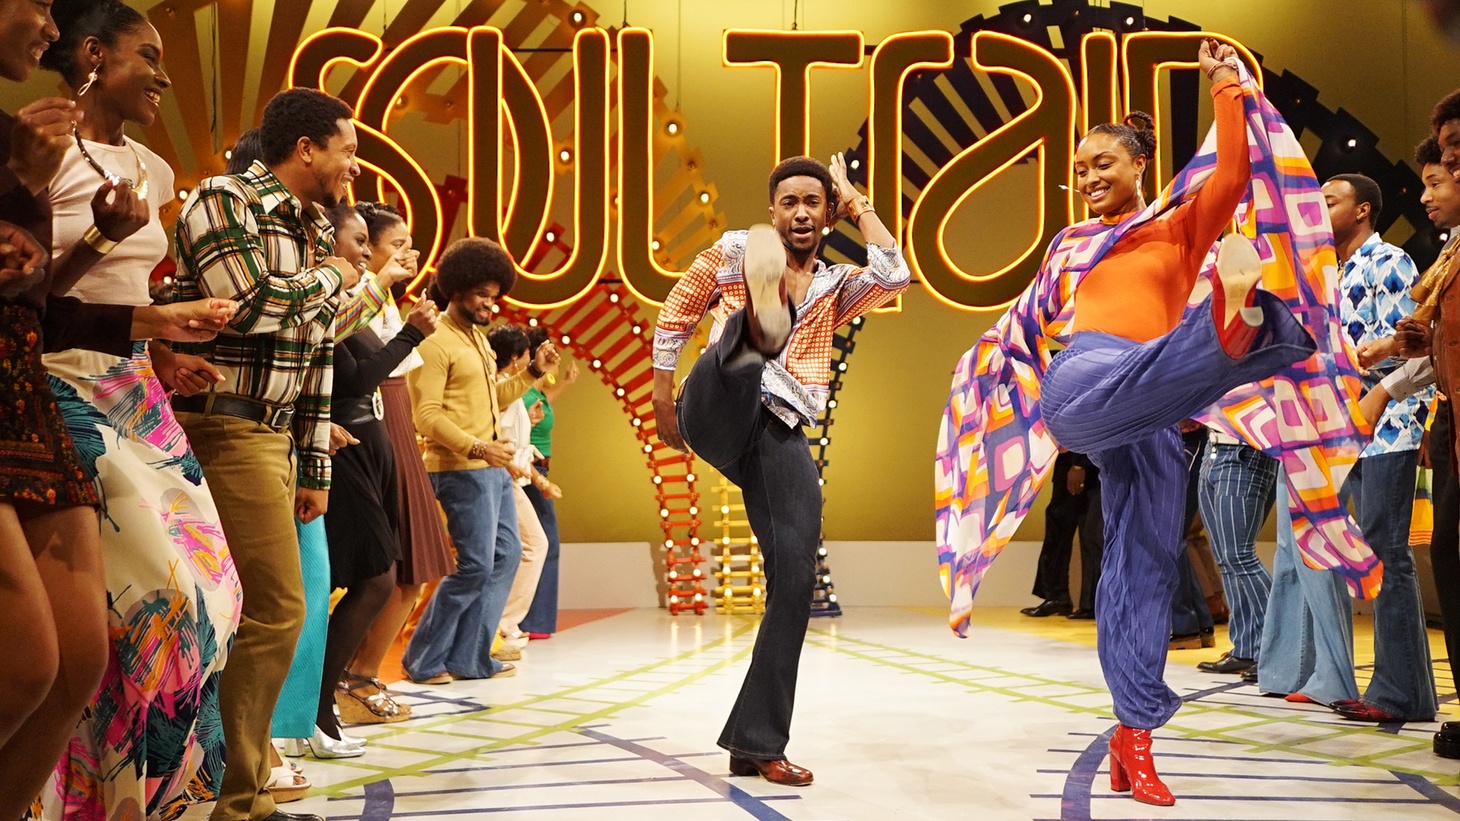 Τα μουσικά βραβεία Soul Train μετακομίζουν στο Apollo Theater του Χάρλεμ